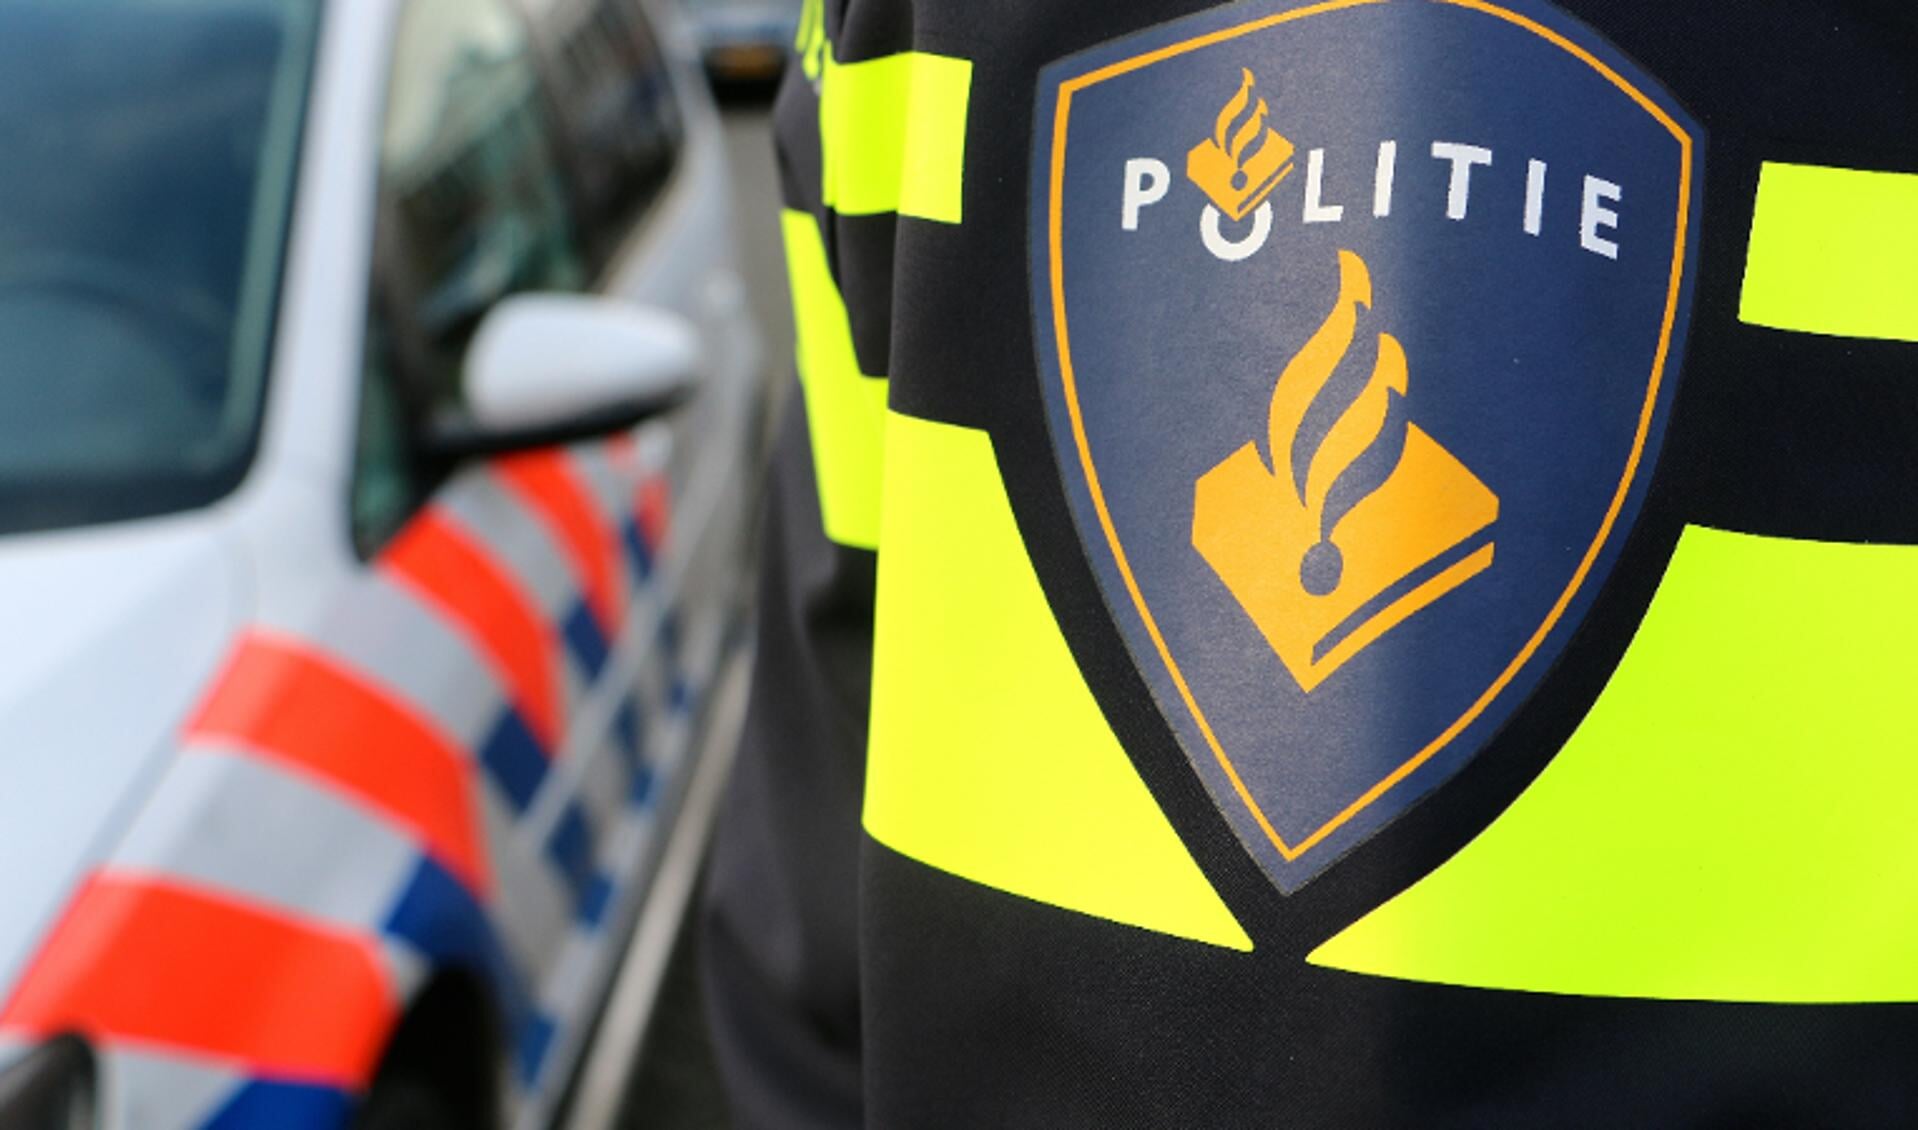 De politie heeft een verdachte aangehouden voor de overval in Grootebroek.